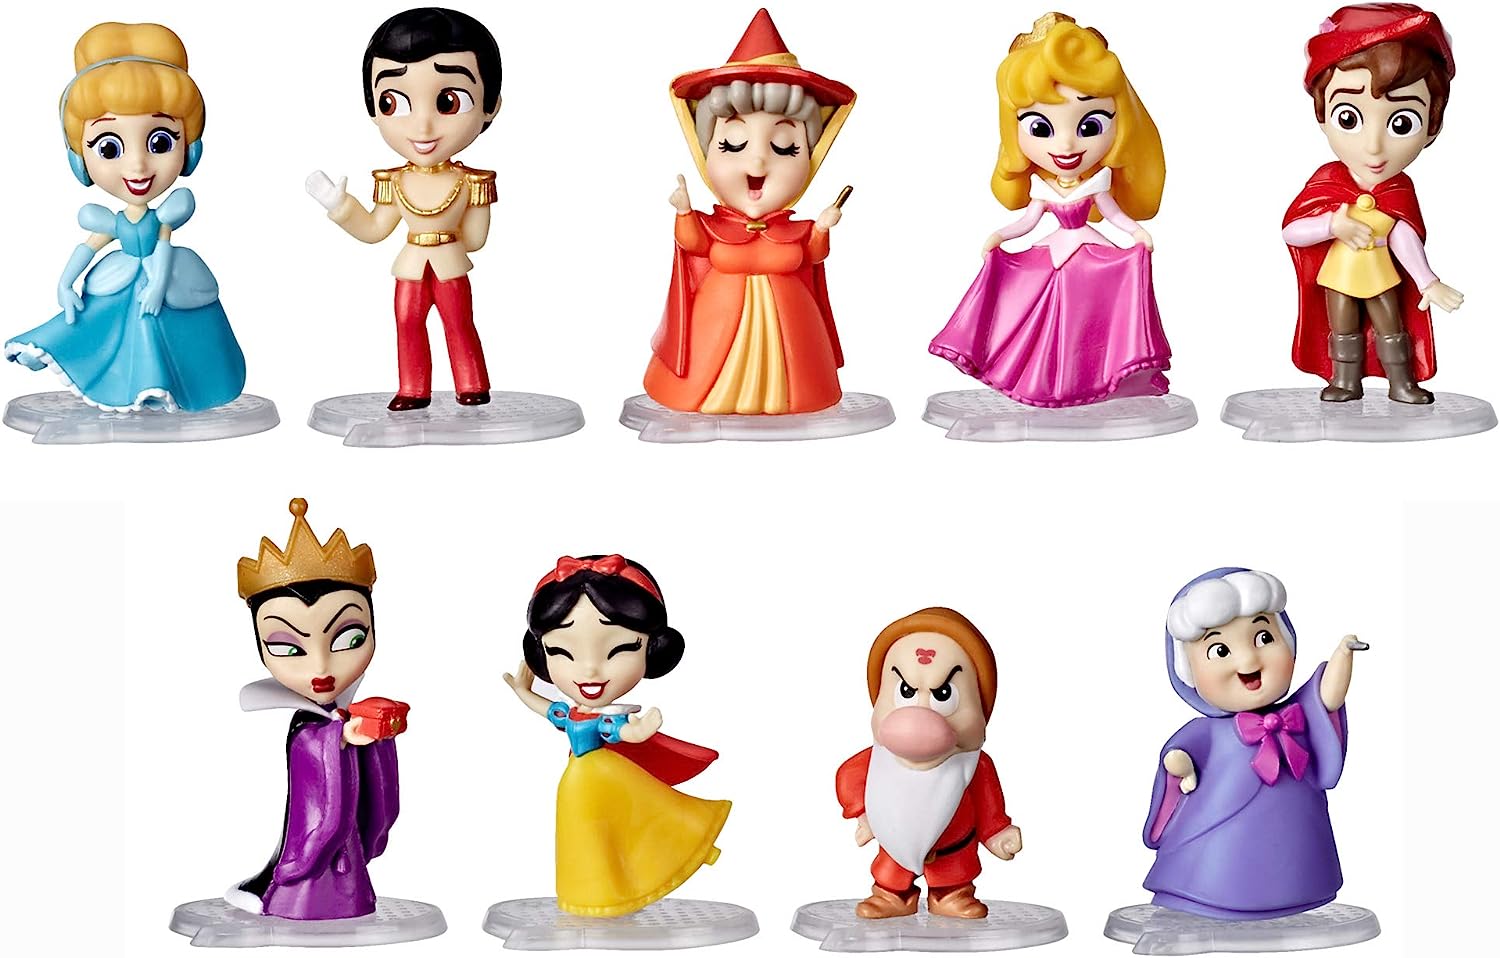 ディズニープリンセス 送料無料 Disney Princess Comics Adventure Discoveries Collection Doll Set With 9 Figures Bases Display Castle And Case Toy For Girls 3 And Upディズニープリンセス Oswegocountybusiness Com